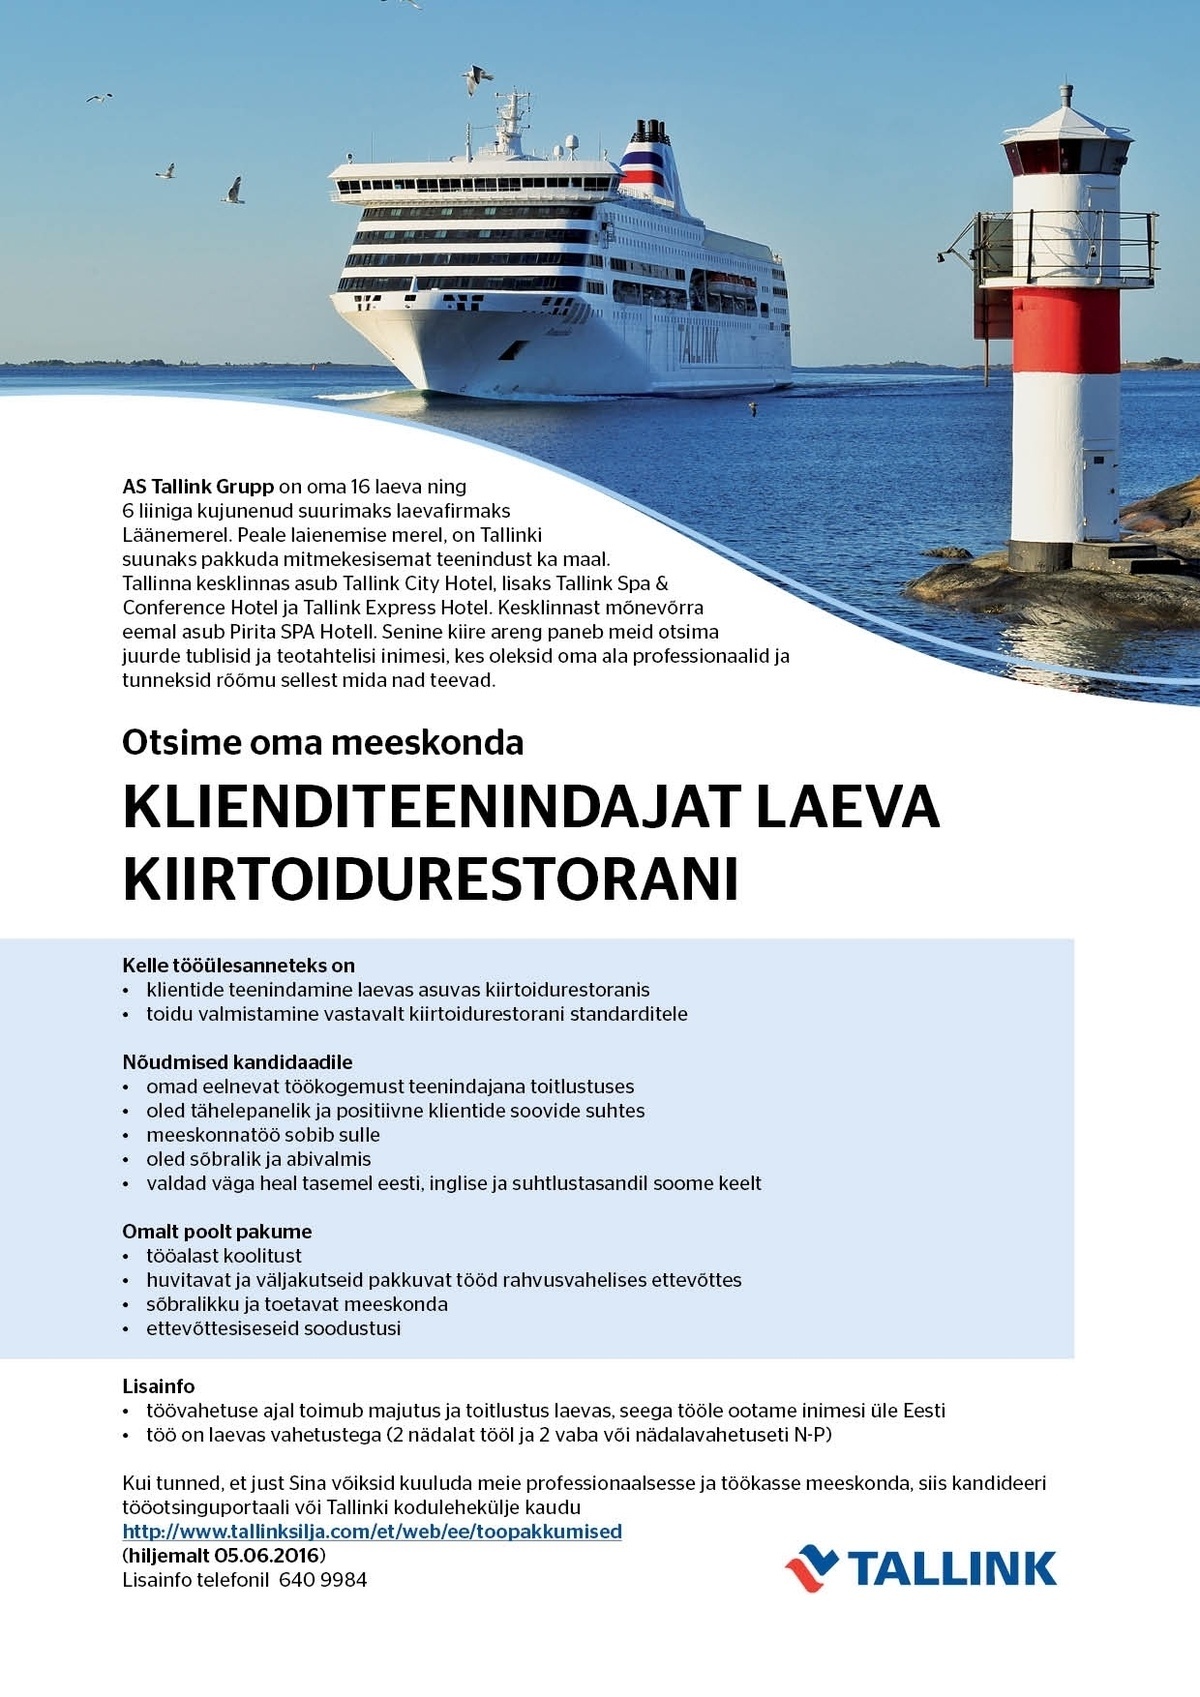 Tallink Grupp AS Klienditeenindaja laeva kiirtoidurestoranis